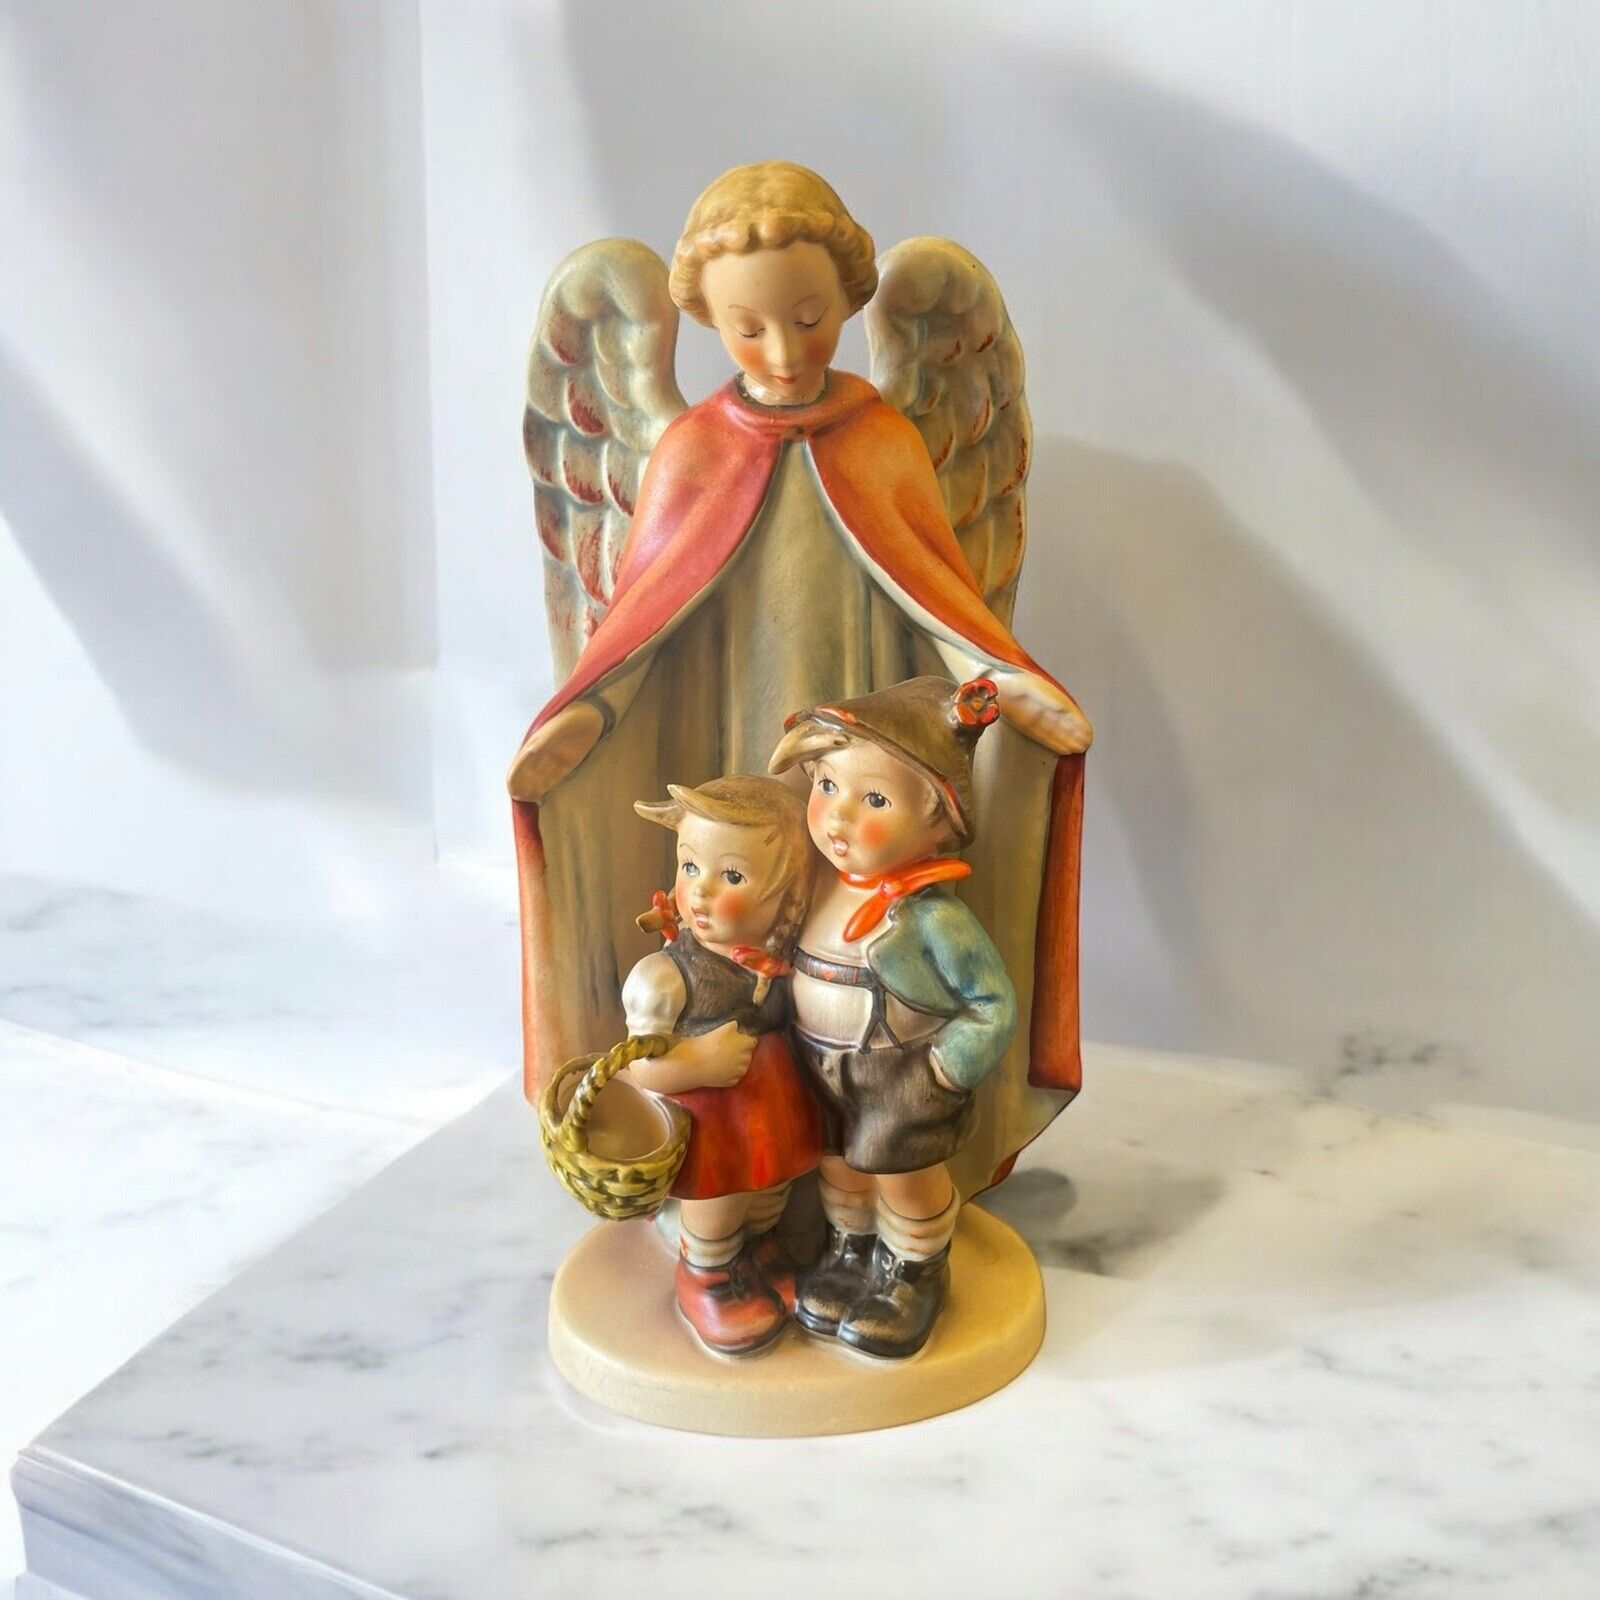 Hummel Figurine: 88/II, Heavenly Protection